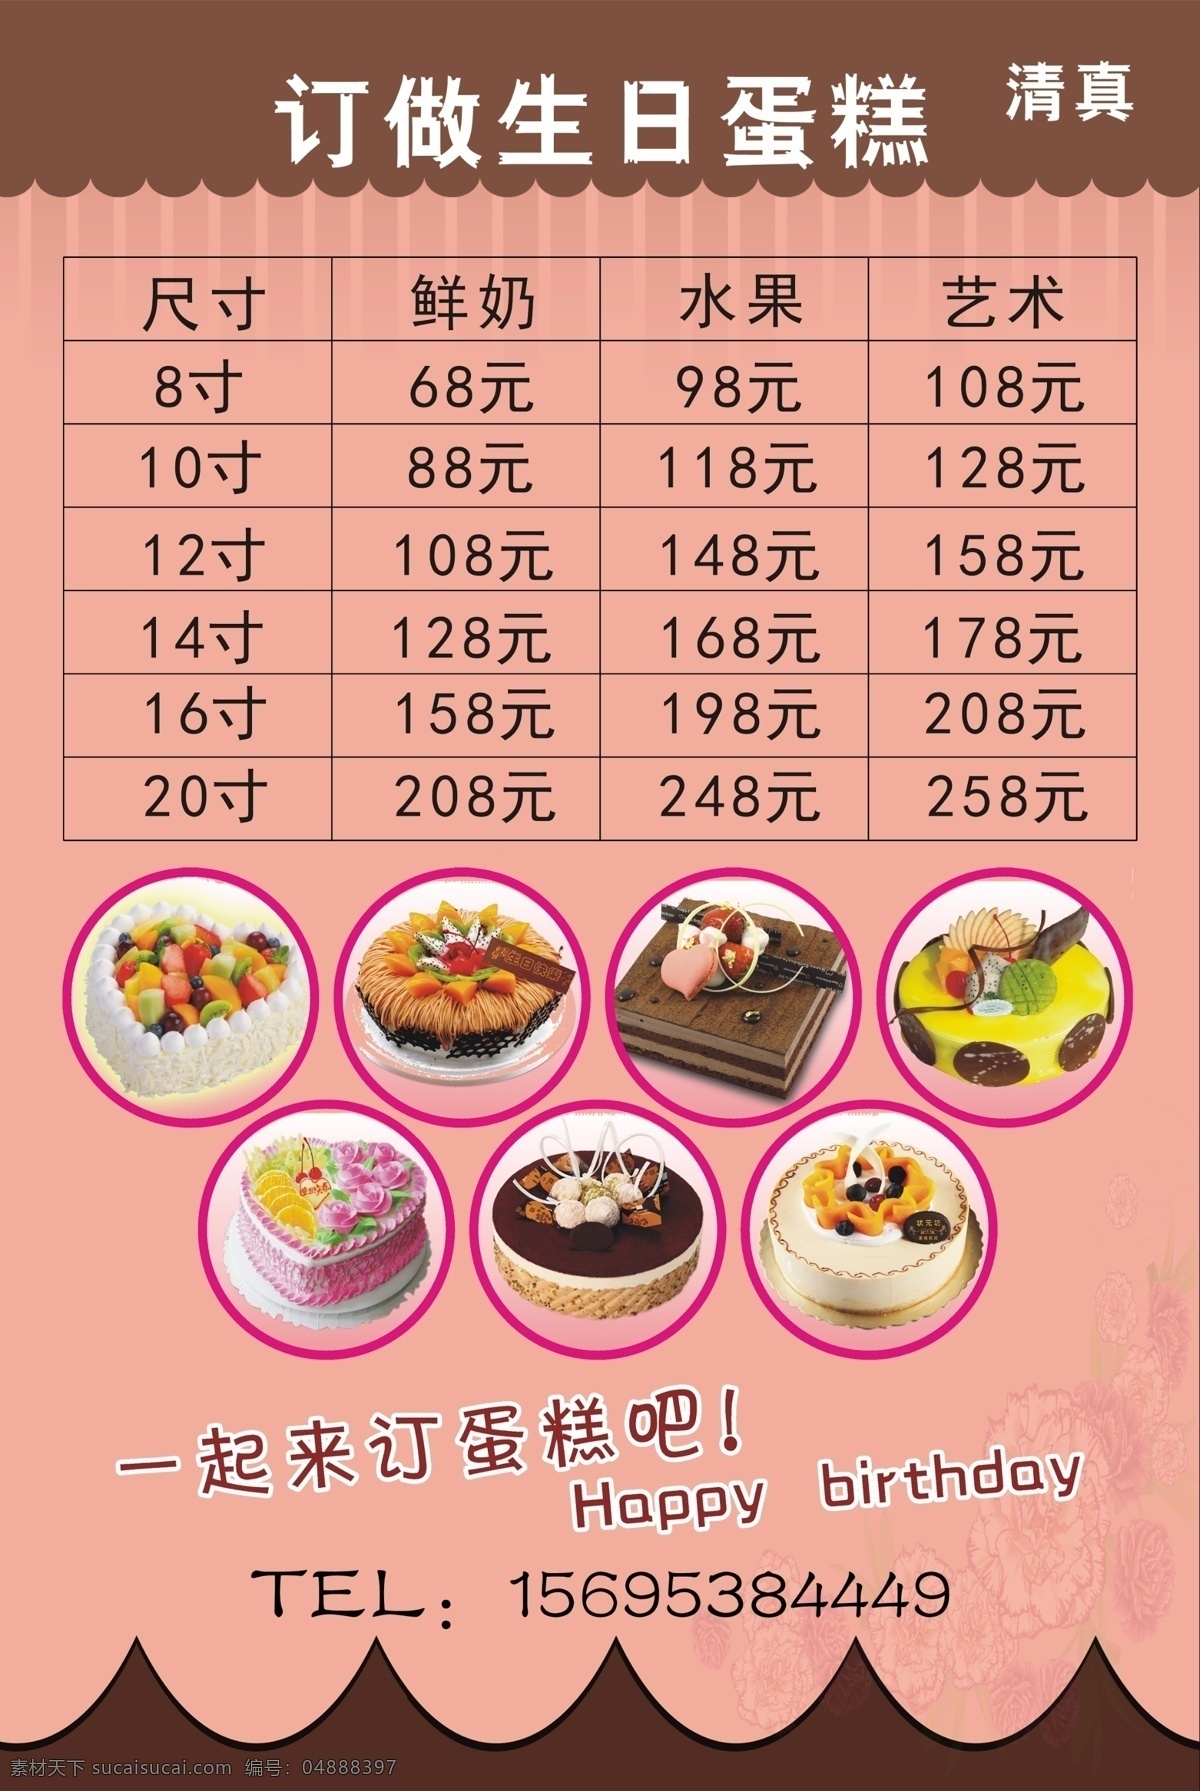 生日蛋糕 蛋糕价目表 多层蛋糕 蛋糕 奶油蛋糕 水果蛋糕